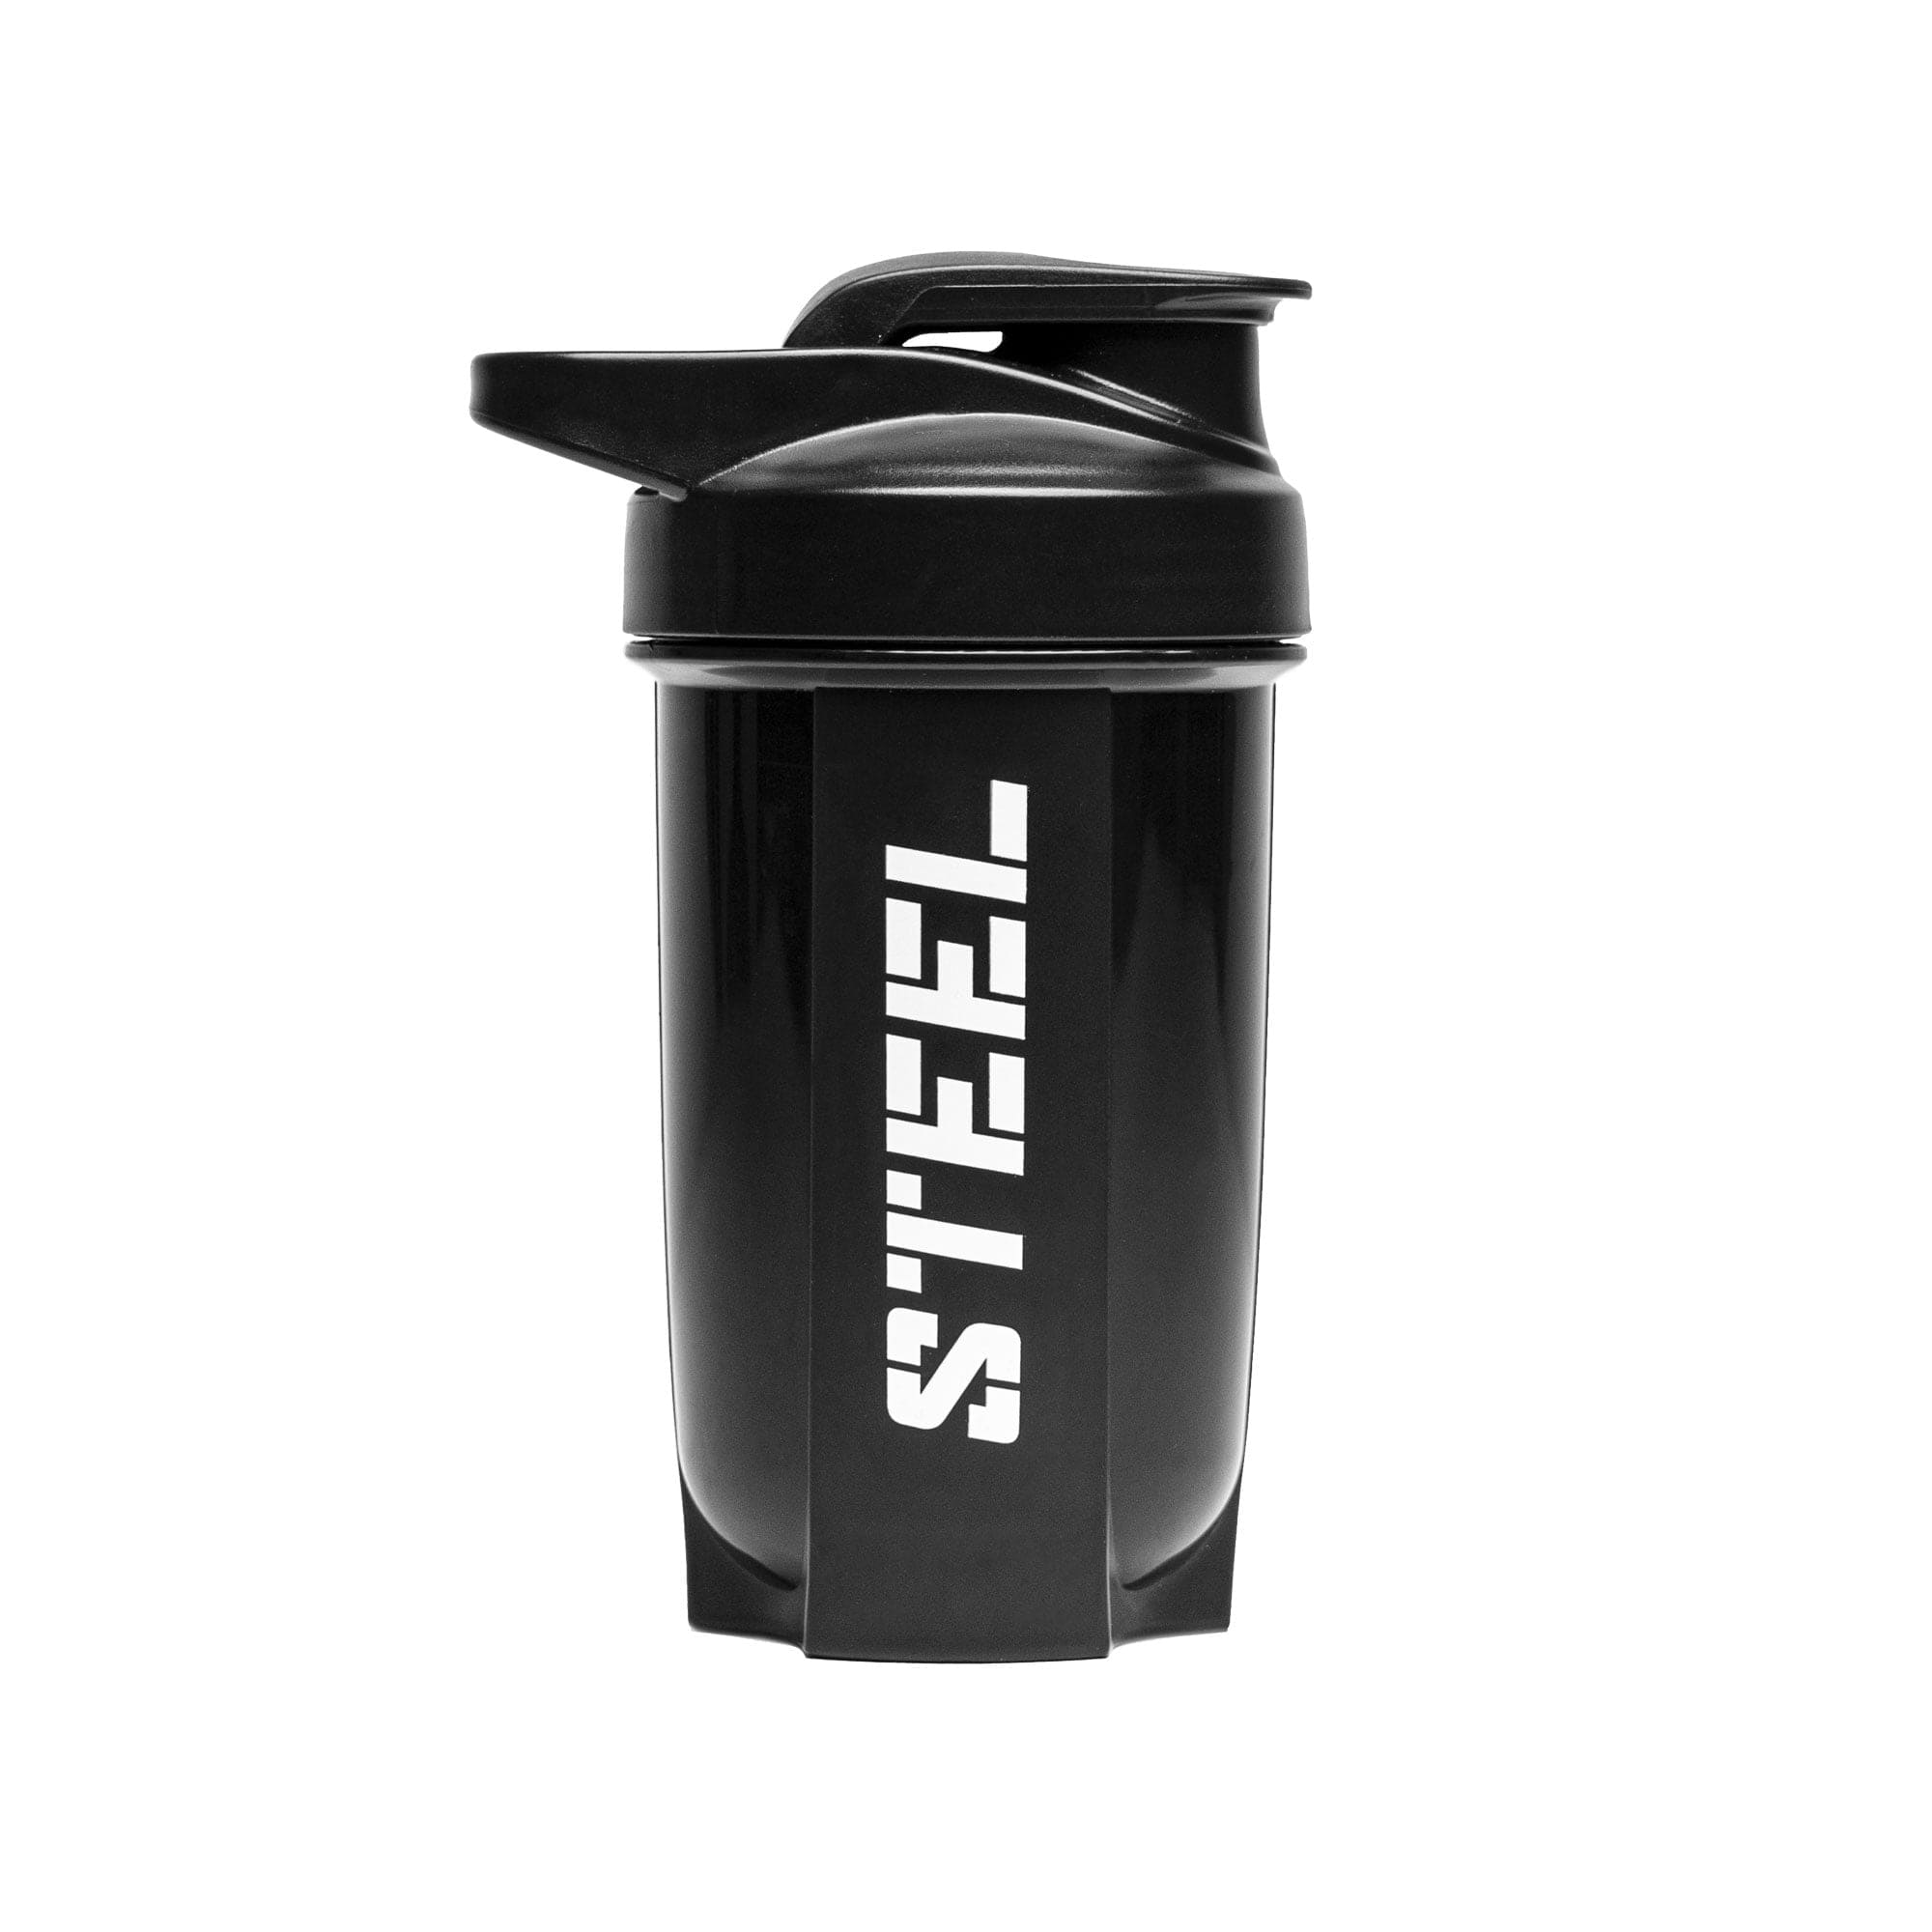 The Steel Supplements Accessories STEEL SHAKER